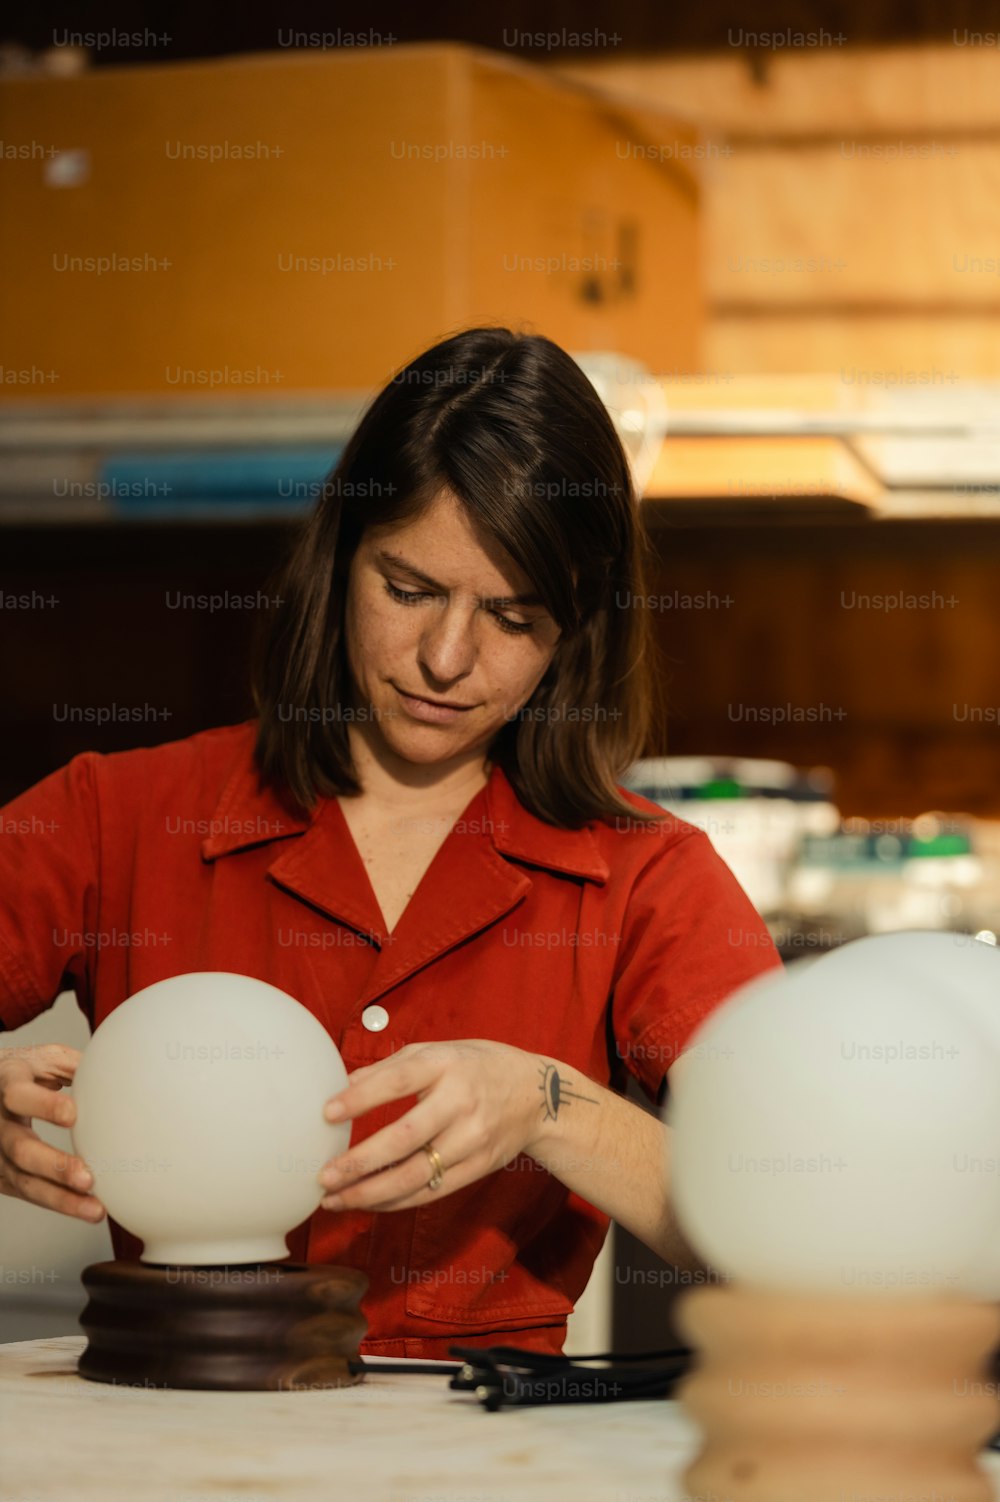 Una mujer con una camisa roja está mirando tres huevos